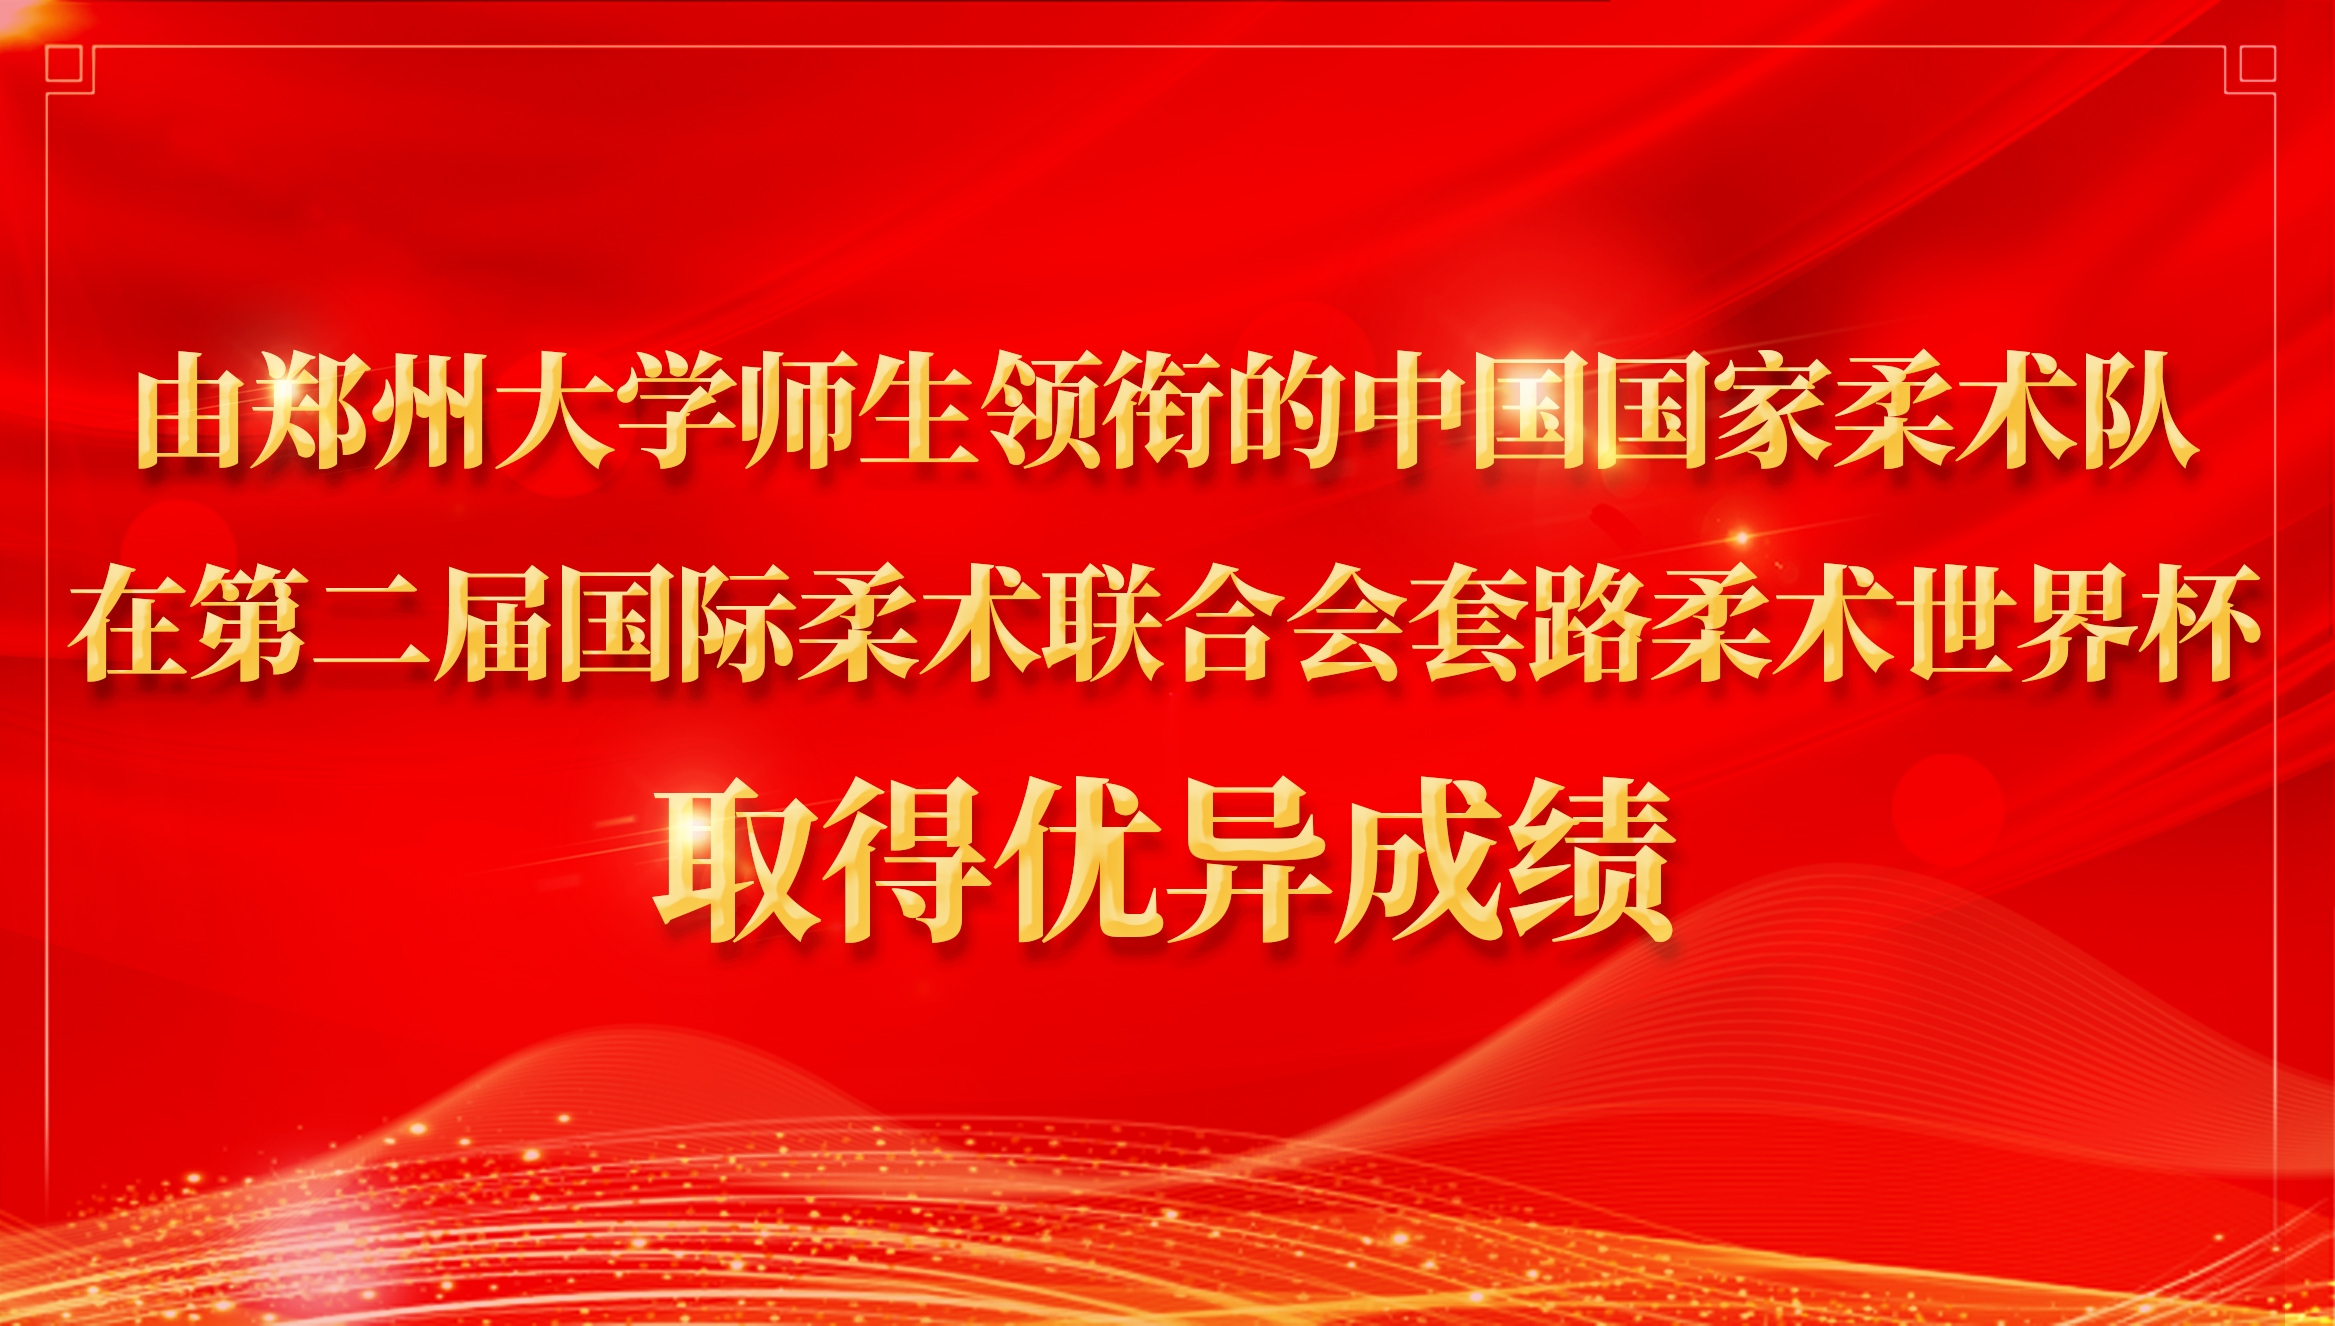 由郑州大学师生领衔的中国国家柔术队在第二届国际柔术联合会套路柔术世界杯取得优异成绩